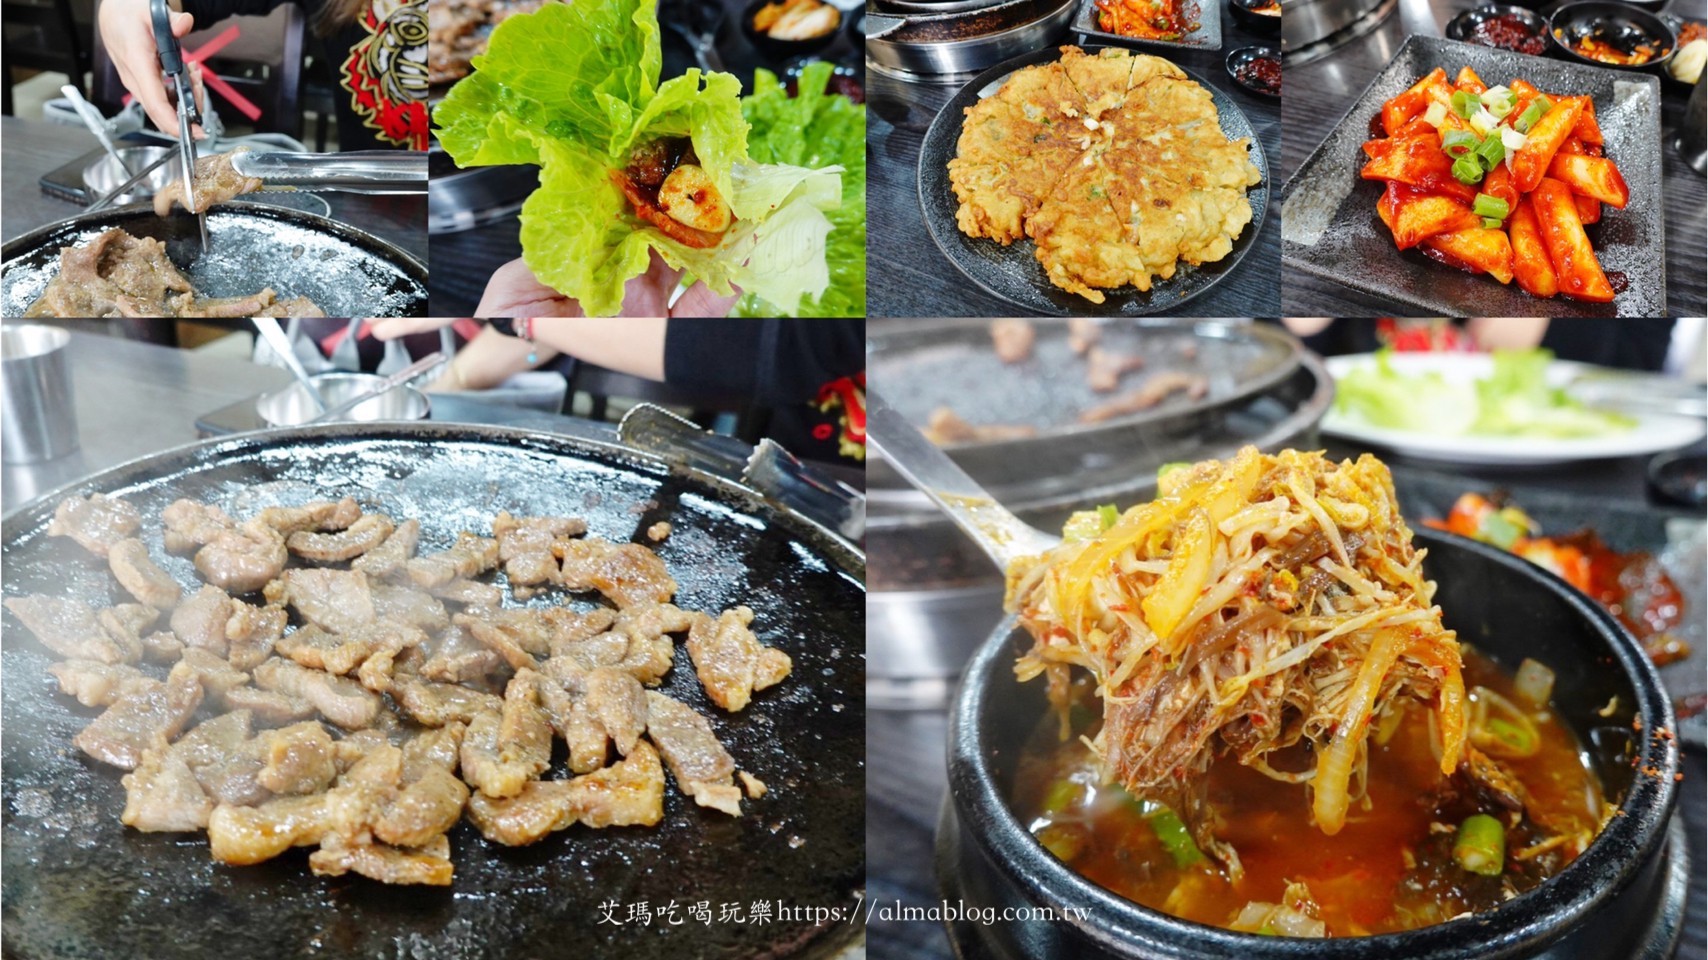 桃園美食,韓式料理,韓式烤肉,韓鼎韓式燒肉